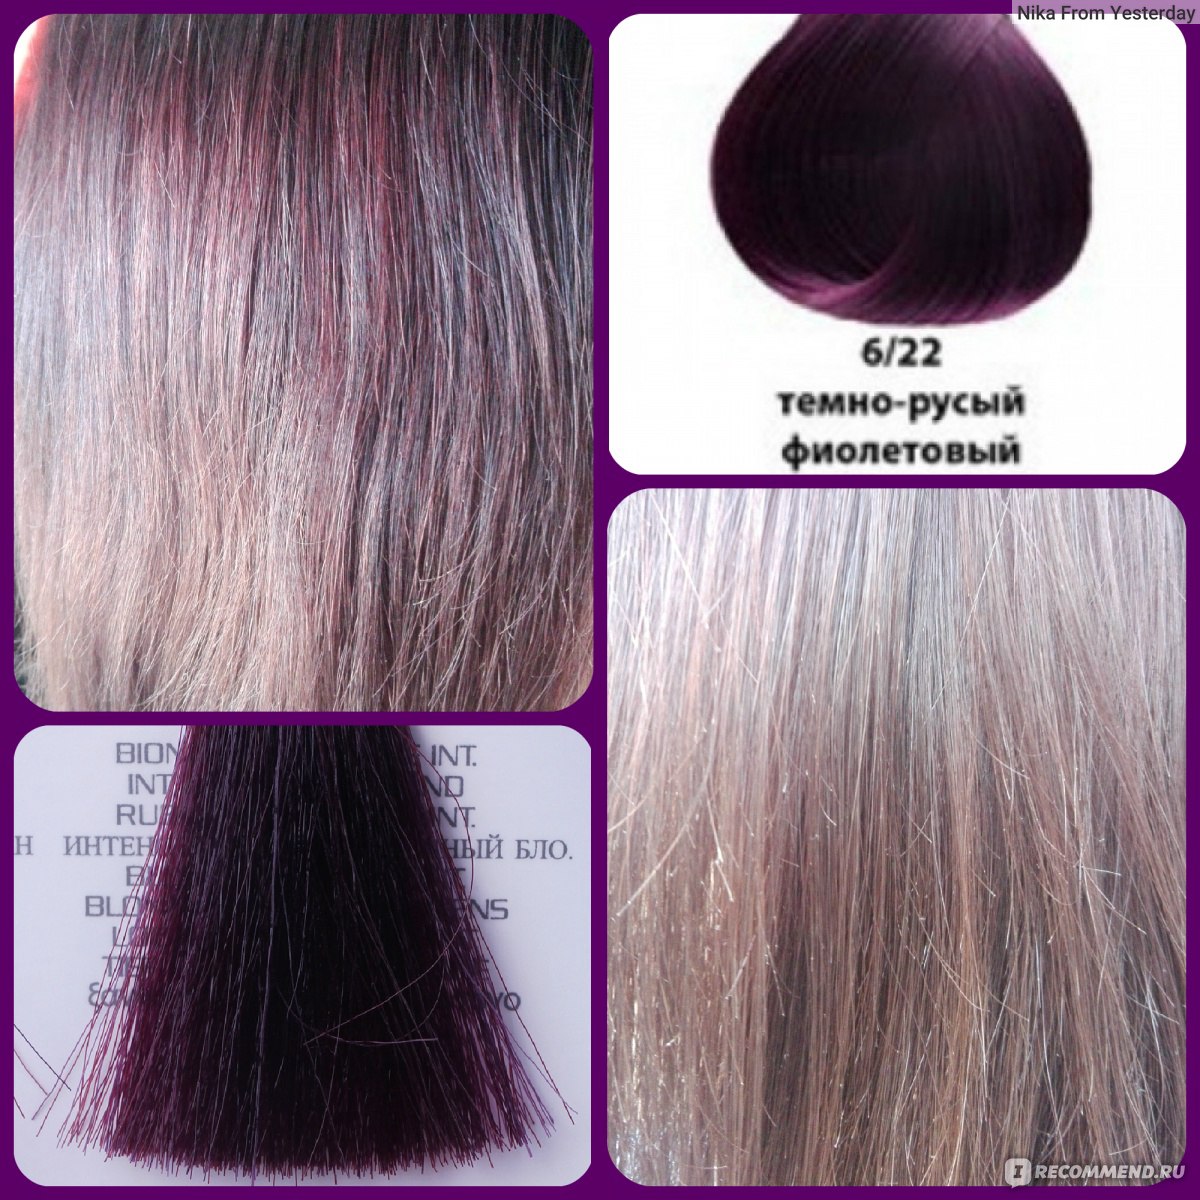 Русо коричневый фиолетовый цвет волос фото